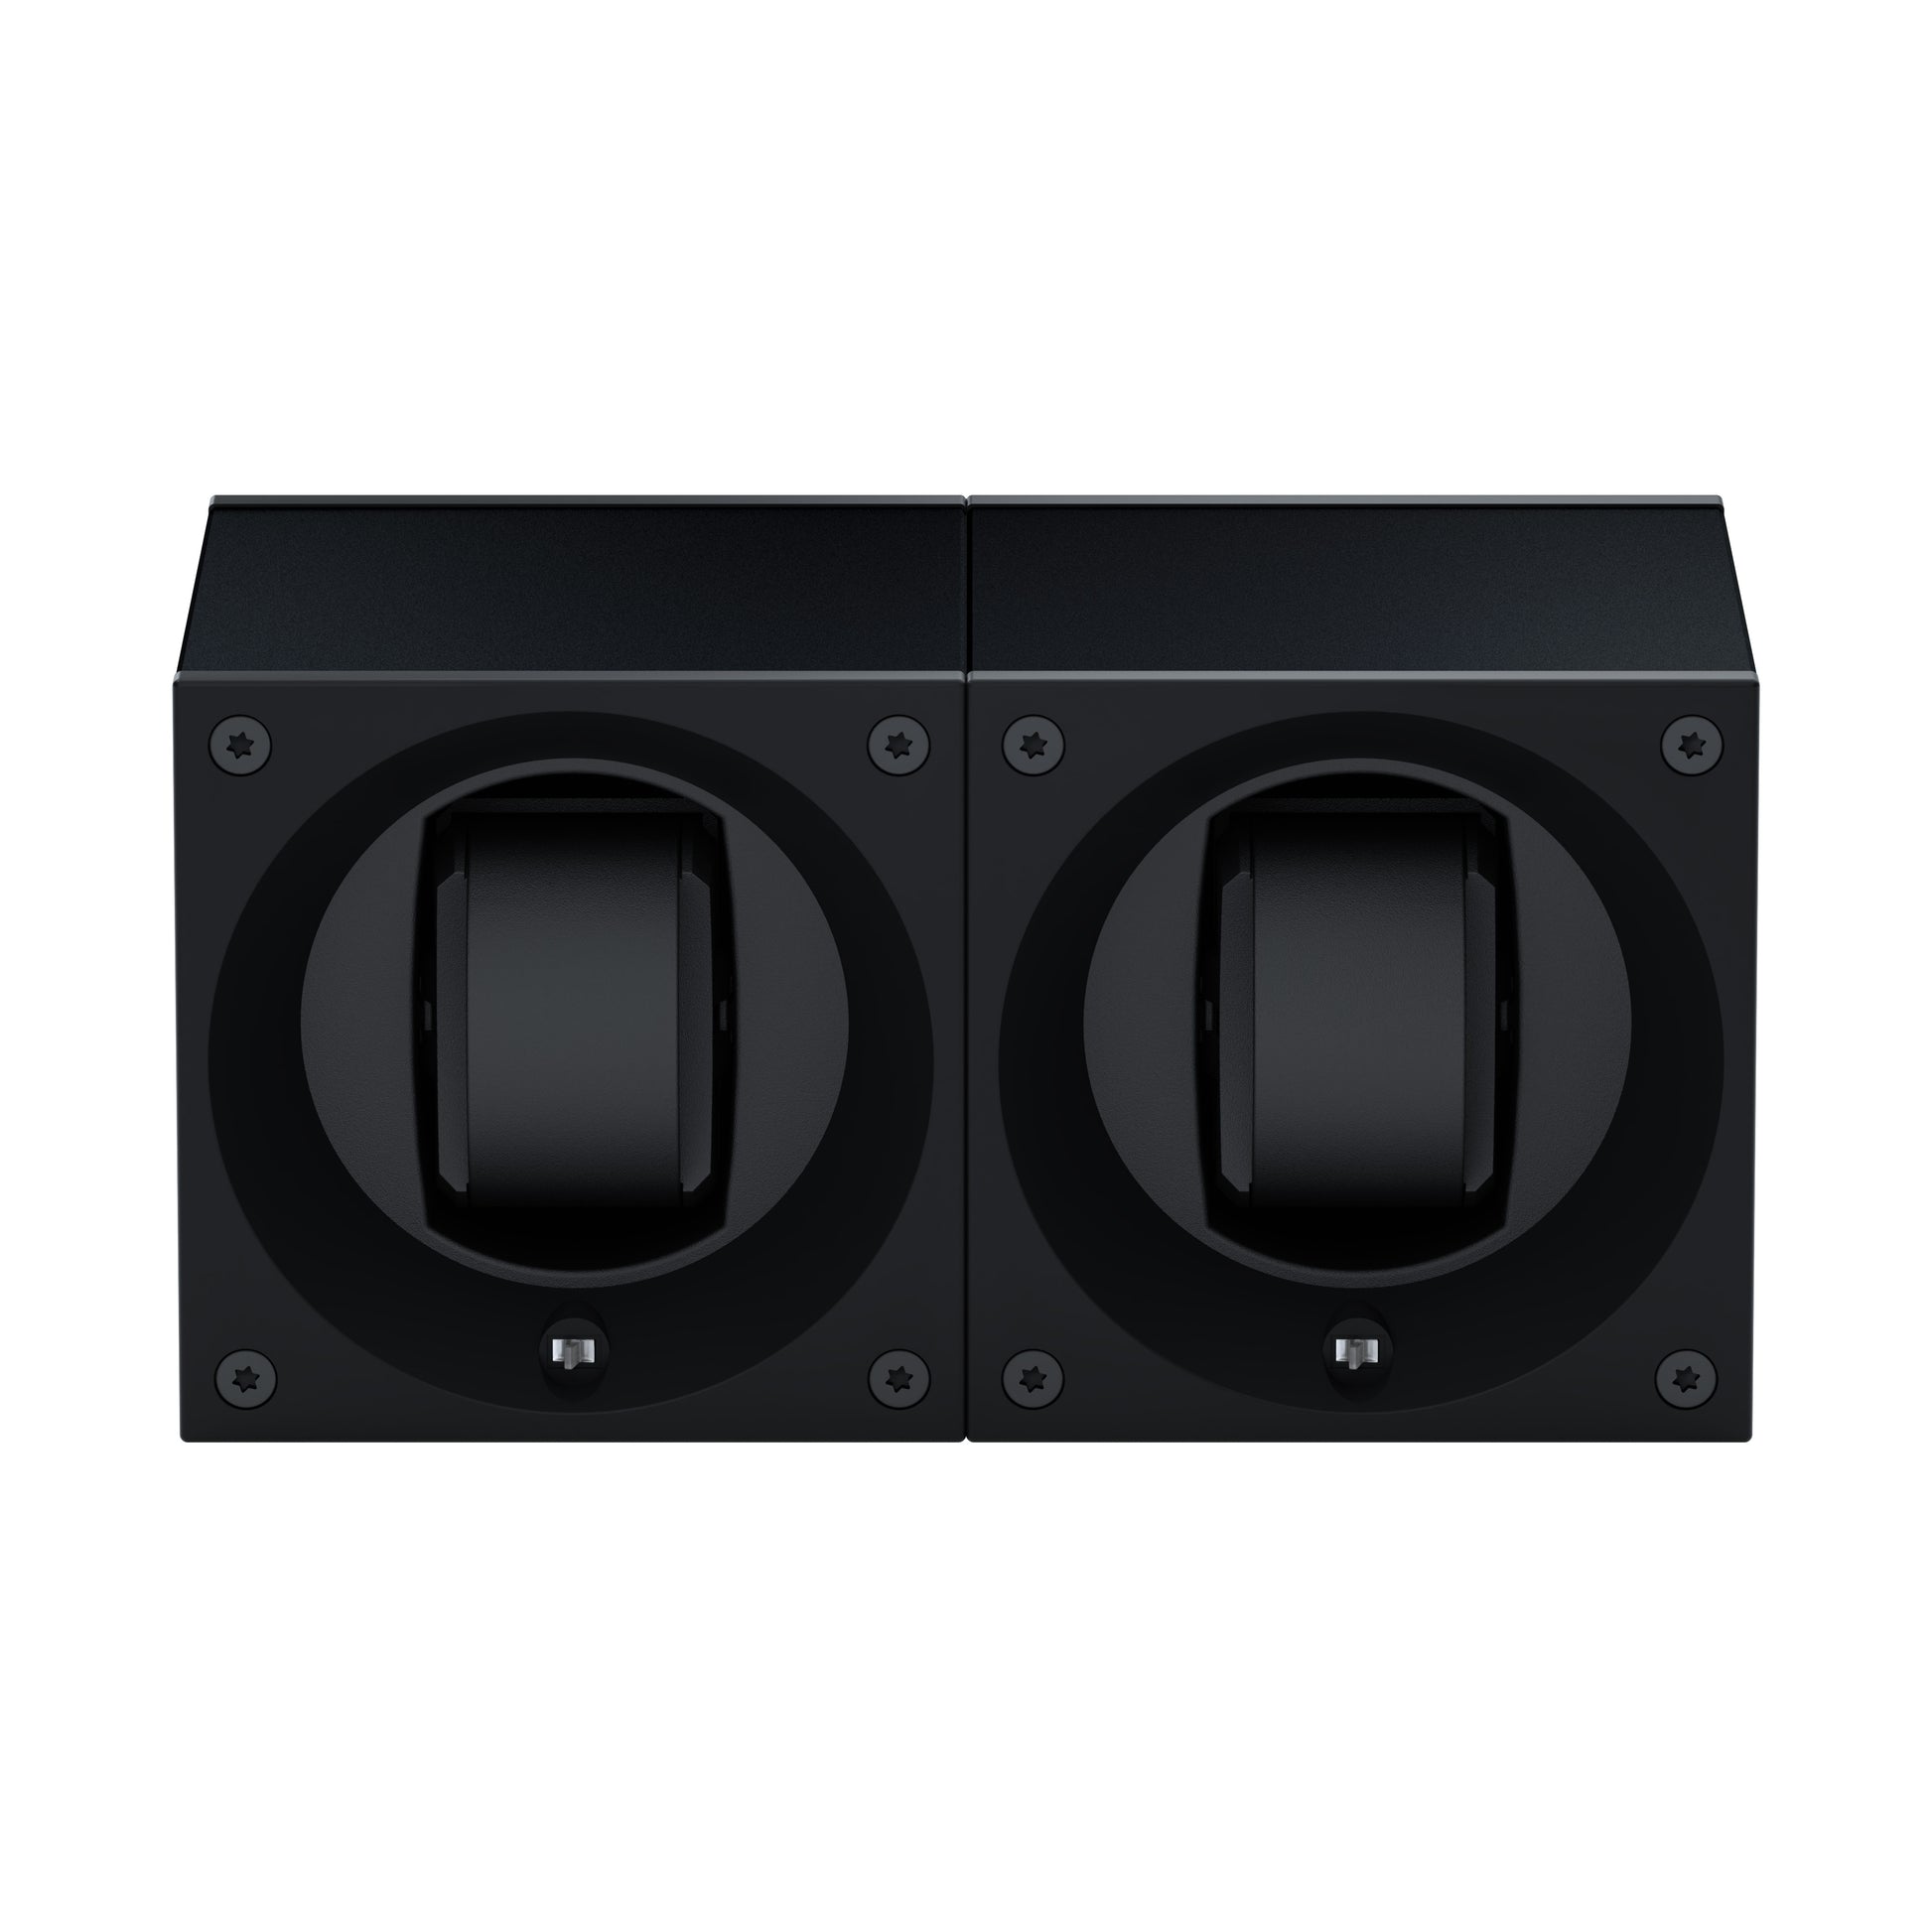 Masterbox 2 montres Aluminium Noir : écrin rotatif pour montre automatique